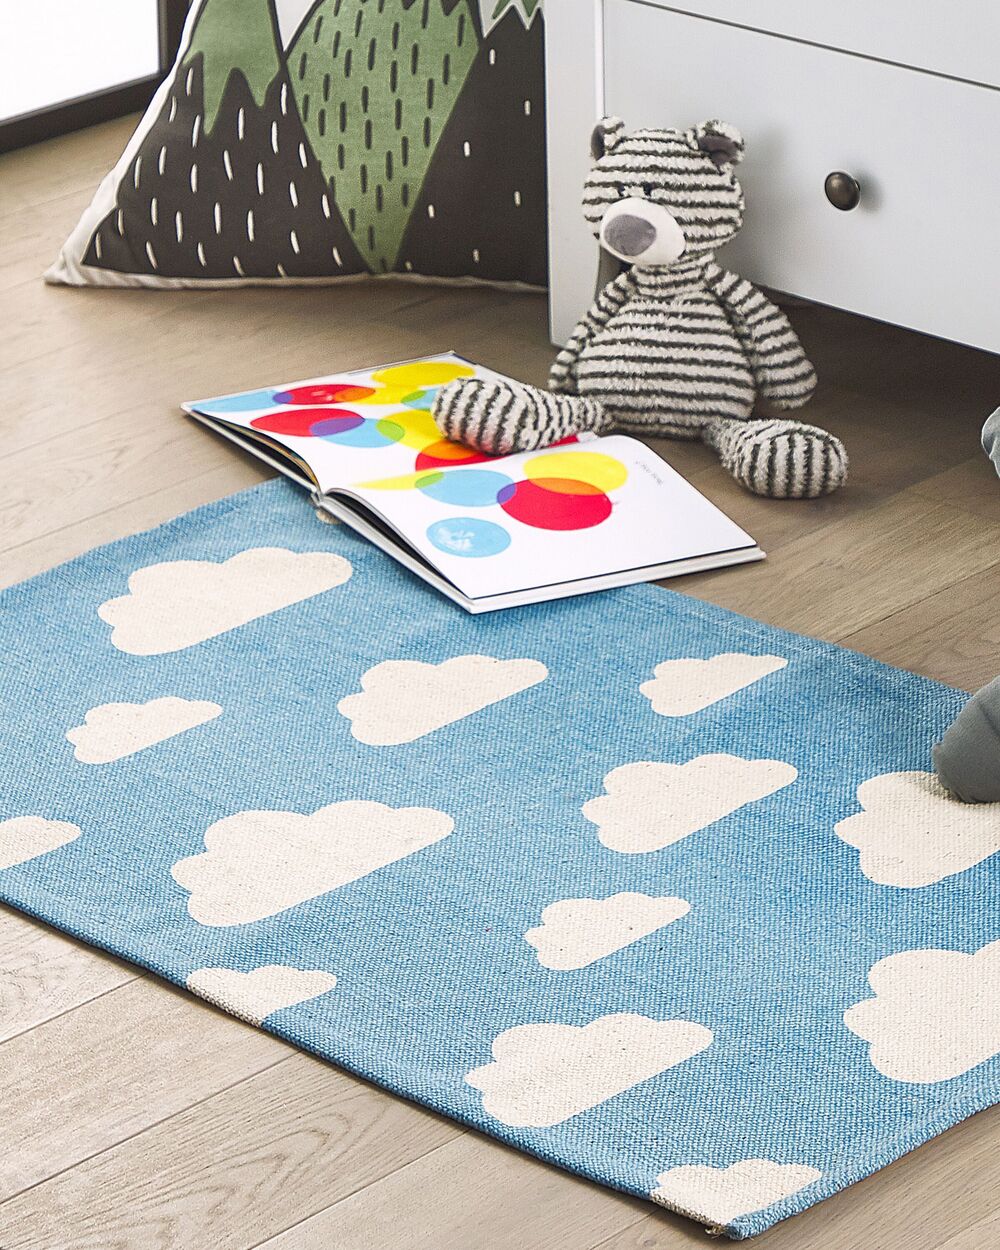 Acquista tappeti per bambini con bellissimi disegni